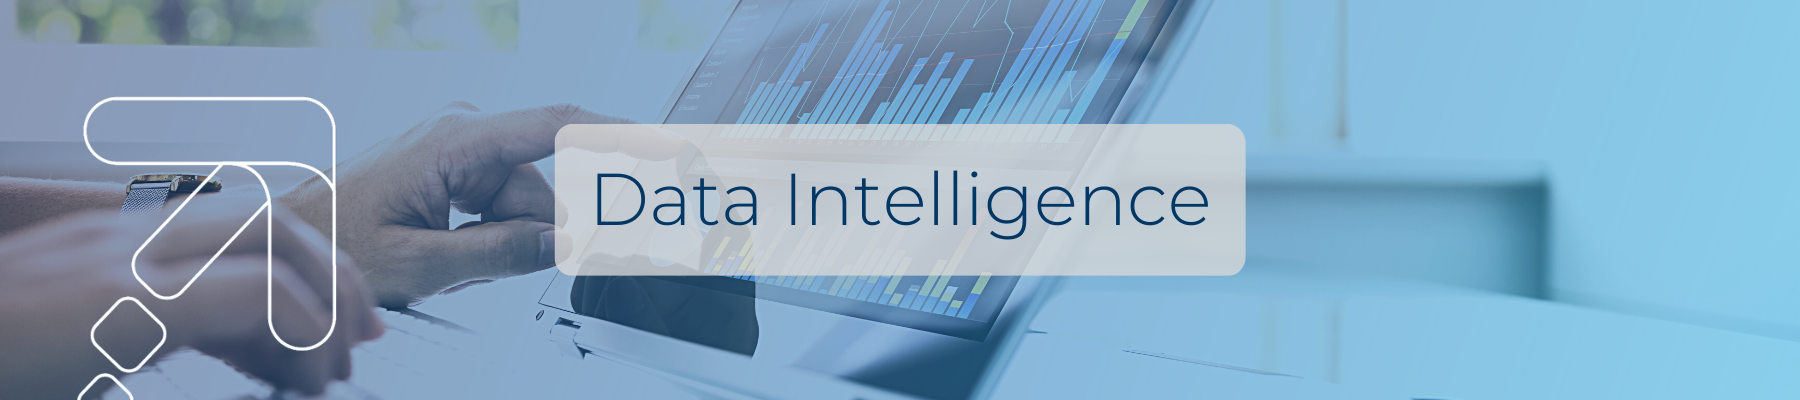 cabecera blog data intelligence (1)